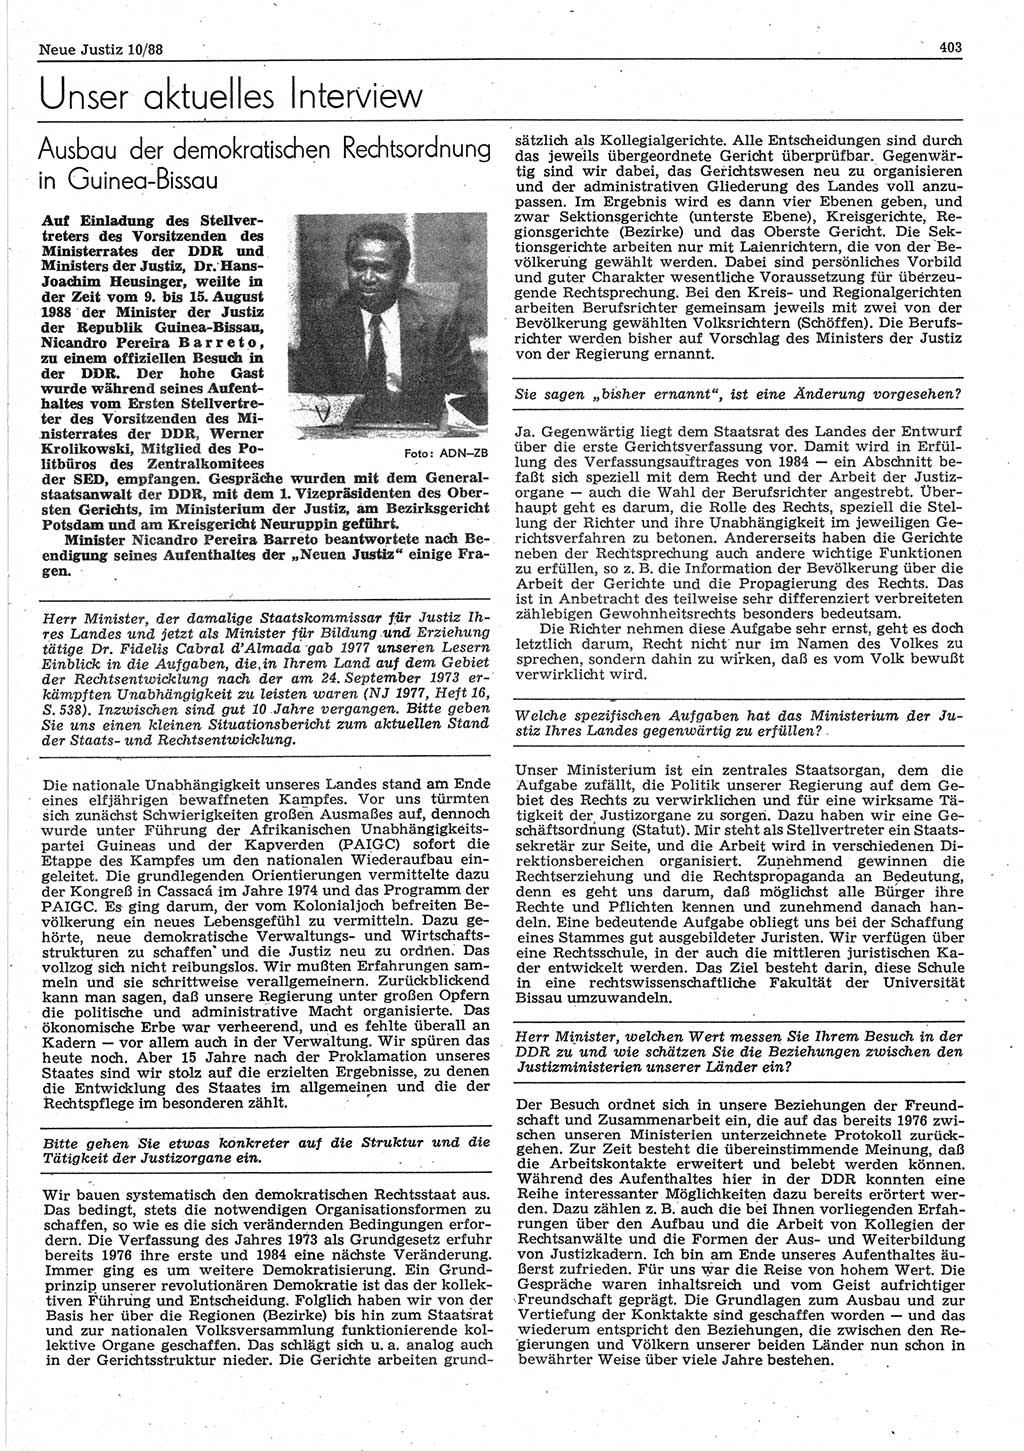 Neue Justiz (NJ), Zeitschrift für sozialistisches Recht und Gesetzlichkeit [Deutsche Demokratische Republik (DDR)], 42. Jahrgang 1988, Seite 403 (NJ DDR 1988, S. 403)